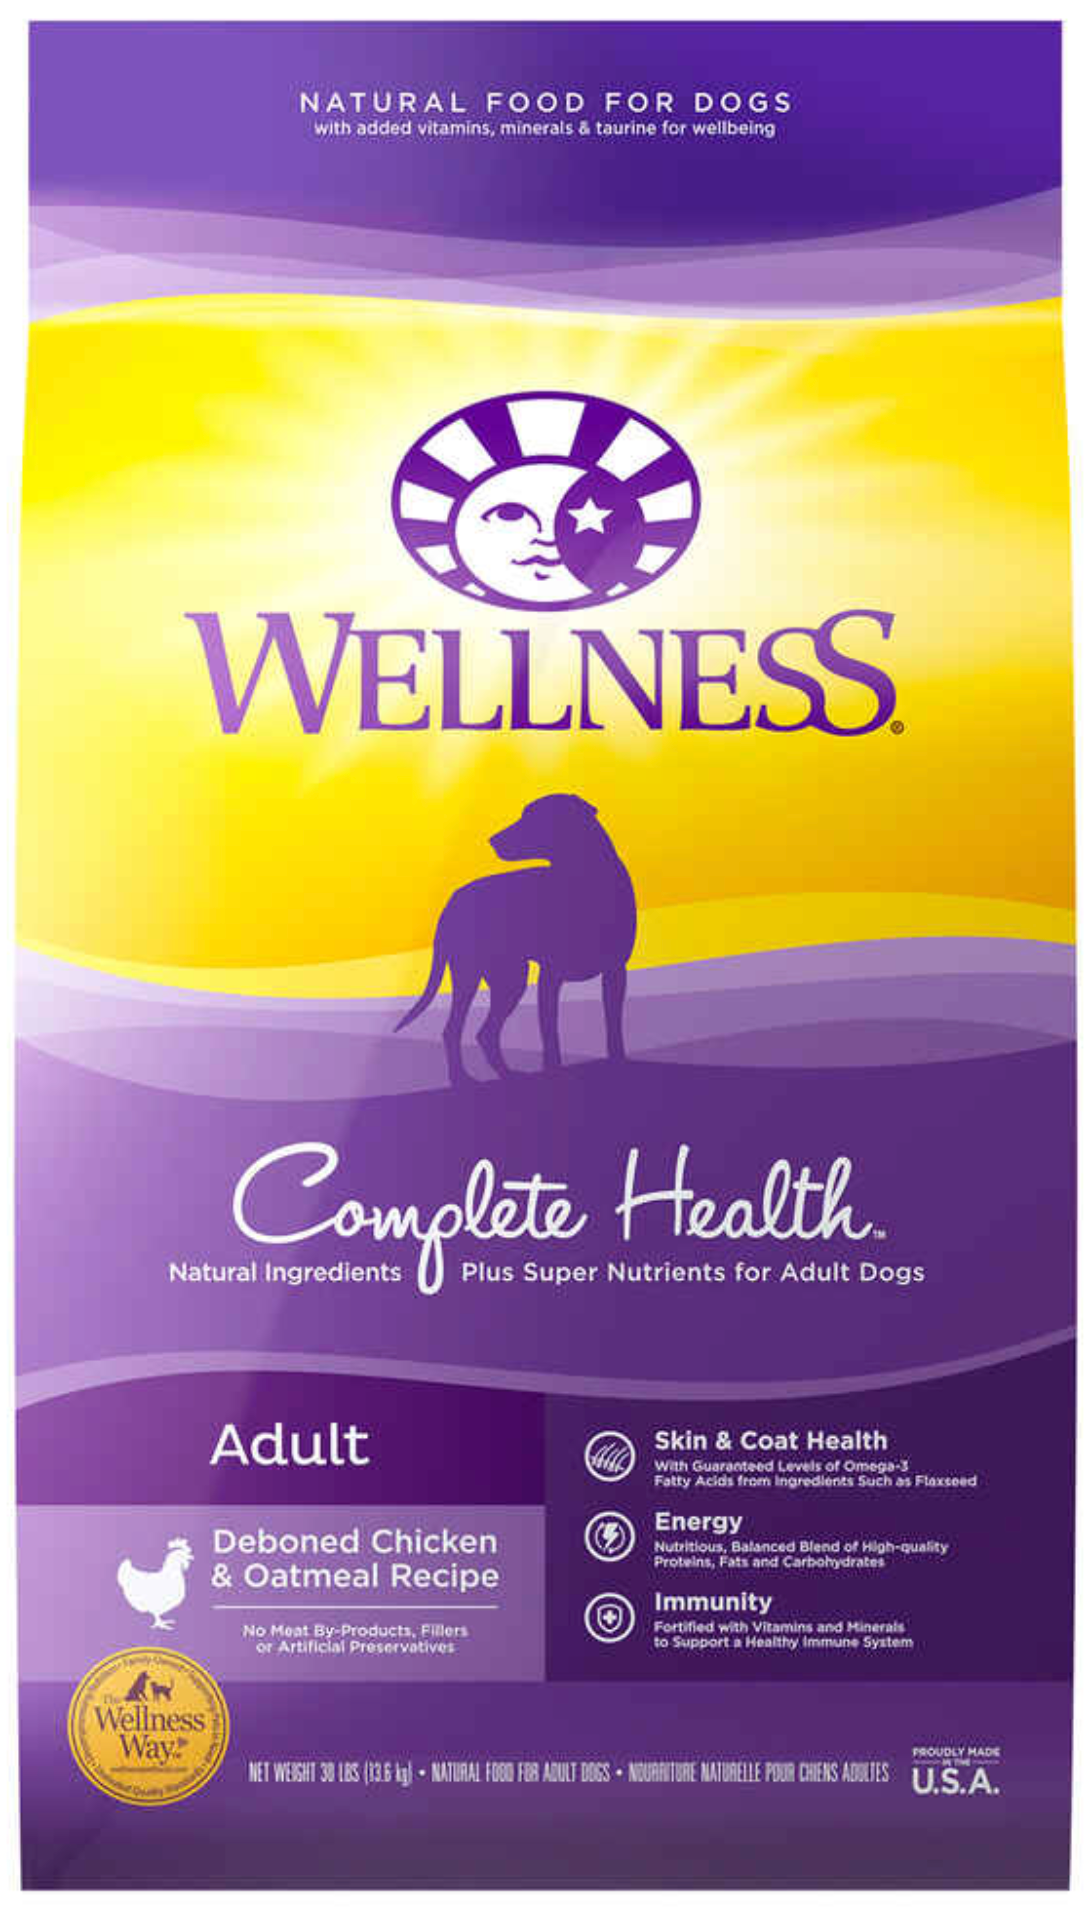 Brand: Wellness